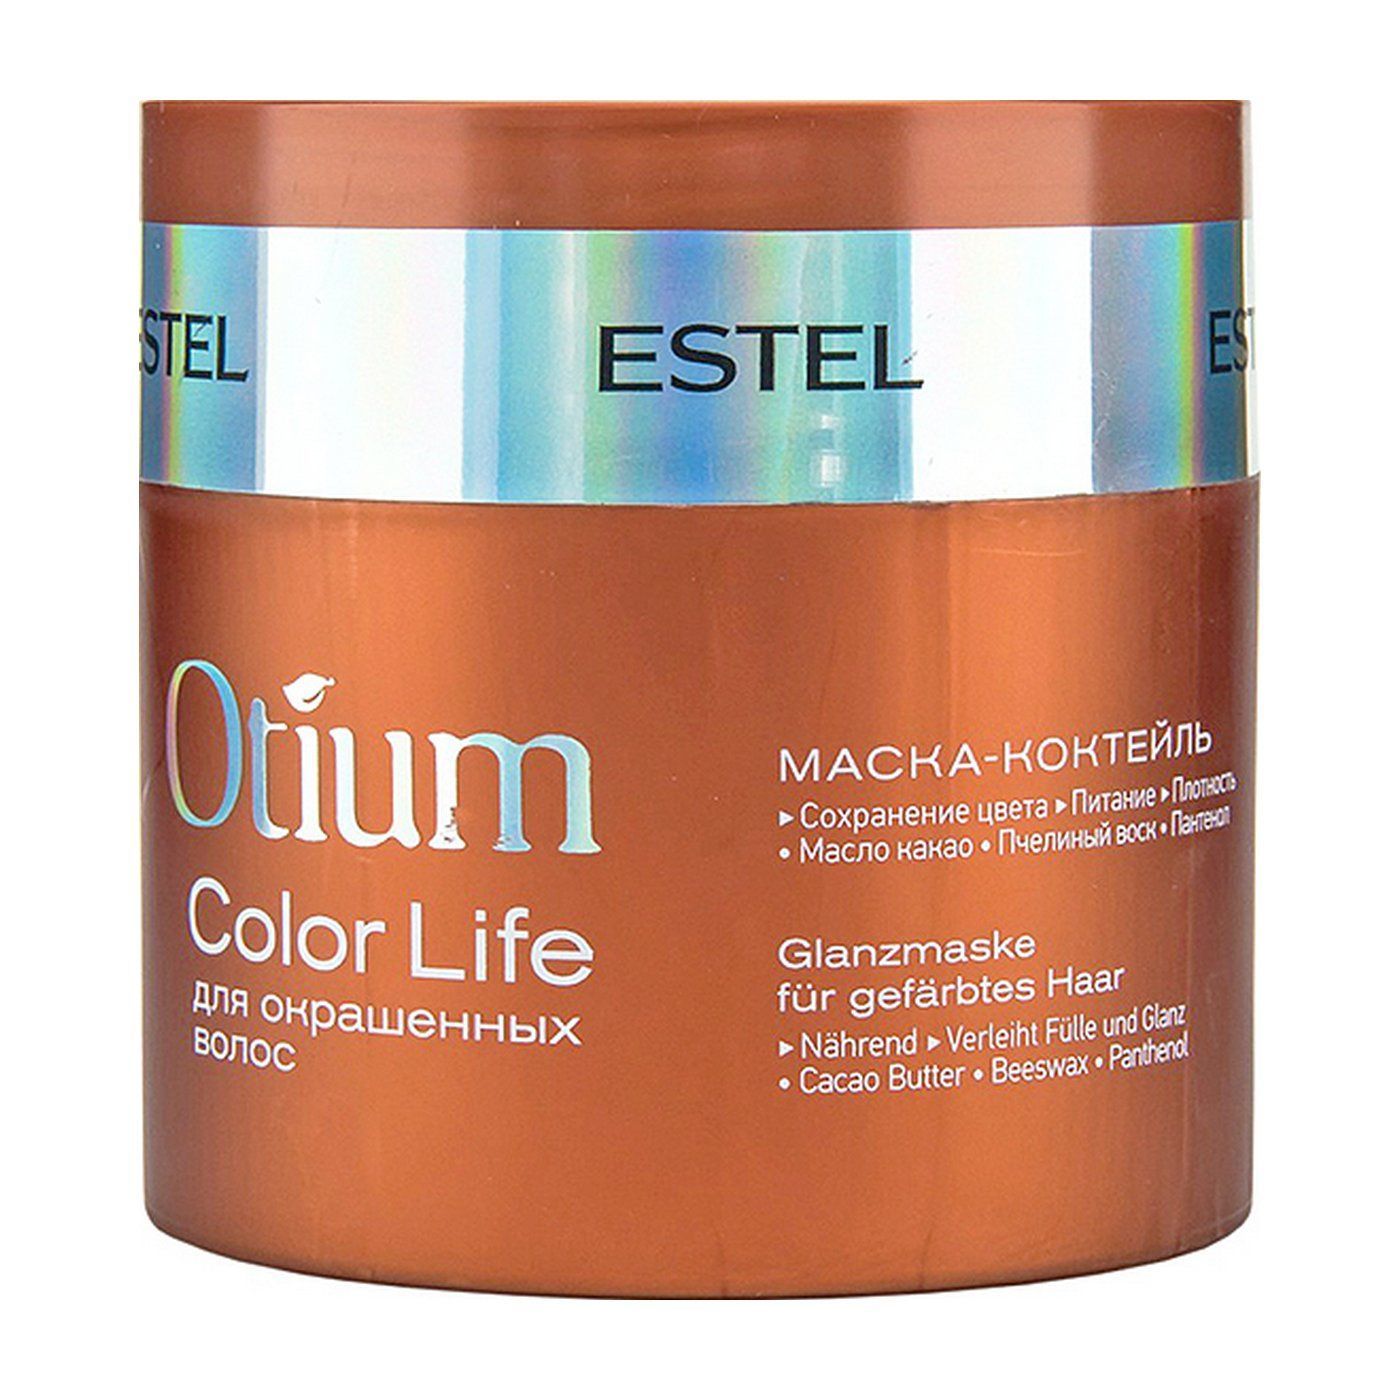 Color color маска для волос отзывы. Estel Otium Color Life маска. Маска-коктейль для окрашенных волос Otium Color Life, 300 мл. Estel/ маска-коктейль для окрашенных волос Otium Color Life (300 мл). Маска Эстель отиум для окрашенных волос.